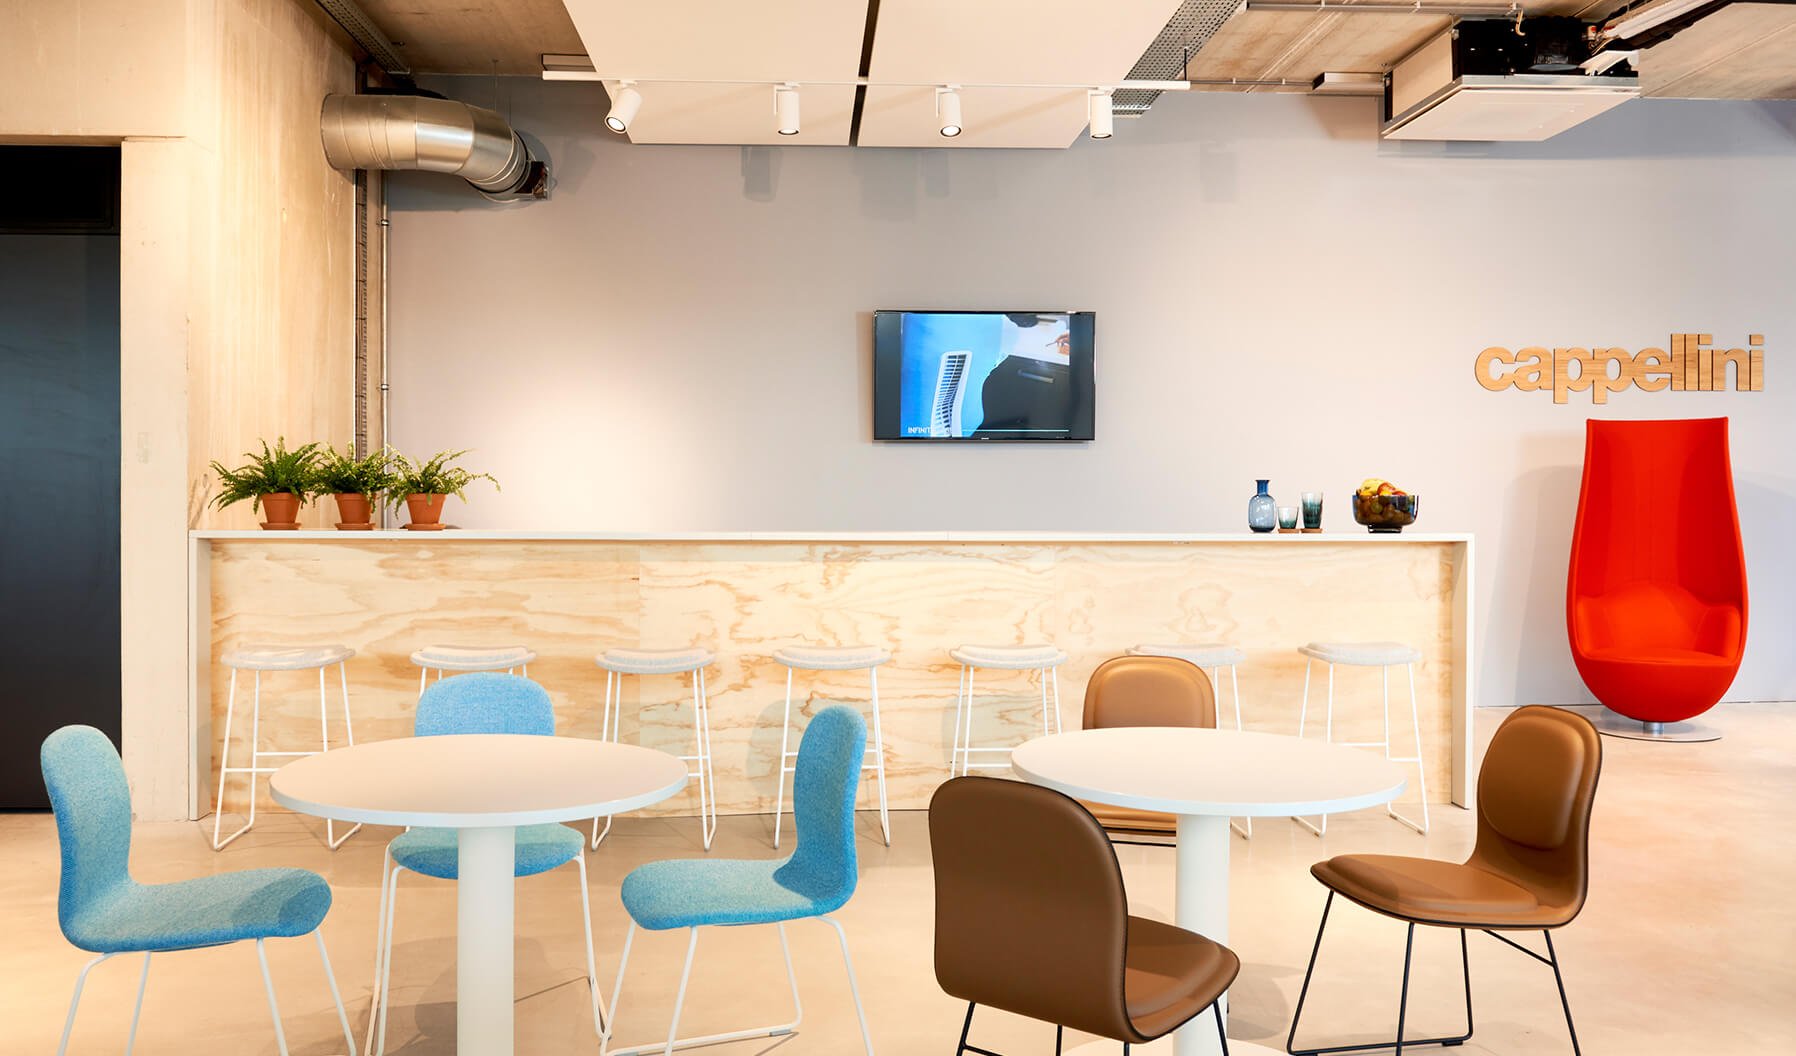 Im stylischen Cappellini-Café herrscht eine lockere Atmosphäre, in der man entspannt Mittagessen oder eine Arbeitspause einlegen und sich mit Kollegen treffen kann. Framery bietet eine Booth, in der konzentriertes Arbeiten und private Gespräche möglich sind.